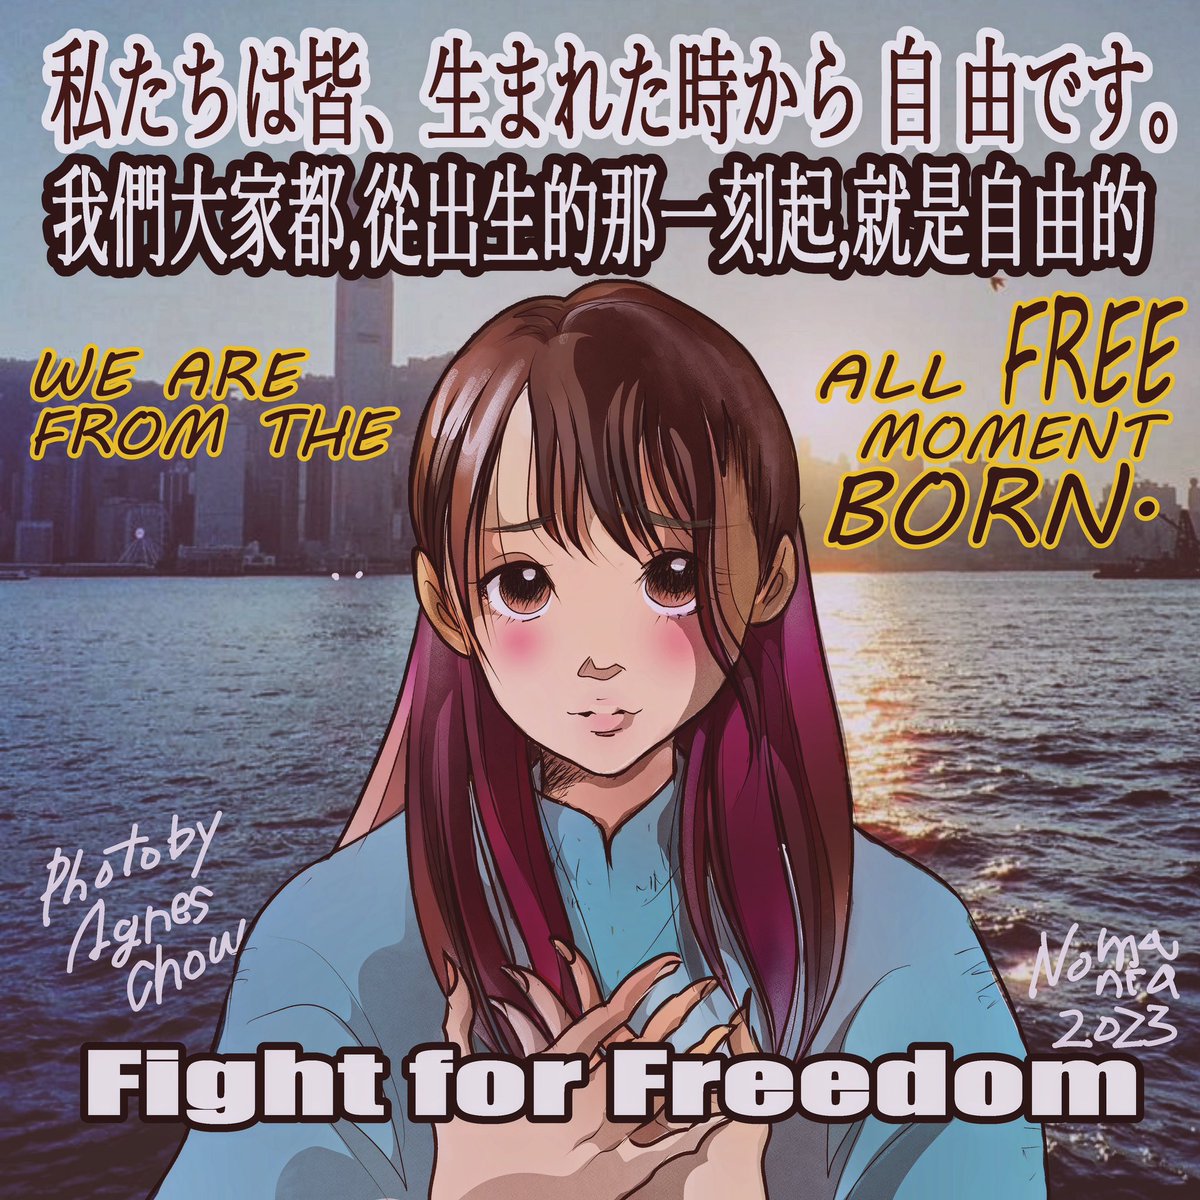 自由周庭　自由香港人　自由人類
#周庭　#AgnesChow
#FreeAgnes #Freedom 
#StandWithHongKong